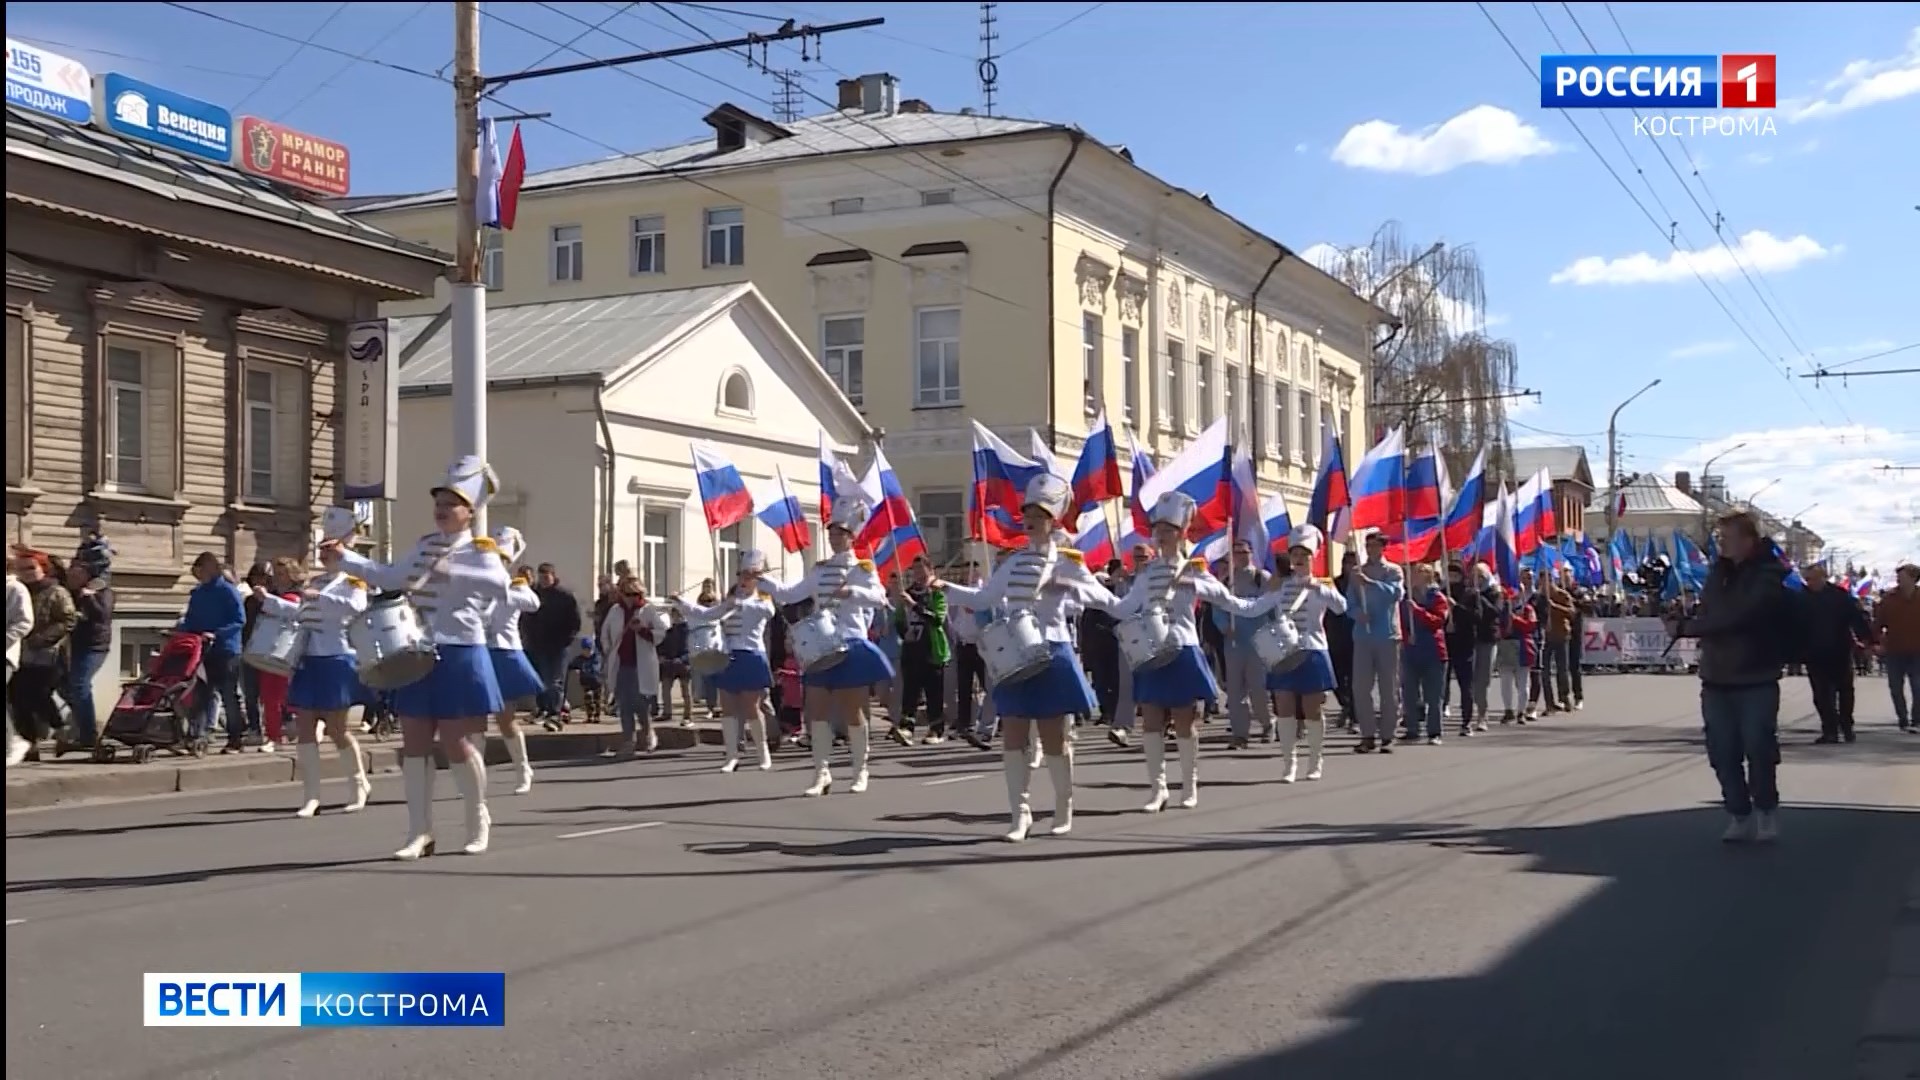 МТС поможет анализировать посещаемость культурно-массовых мероприятий в Костроме